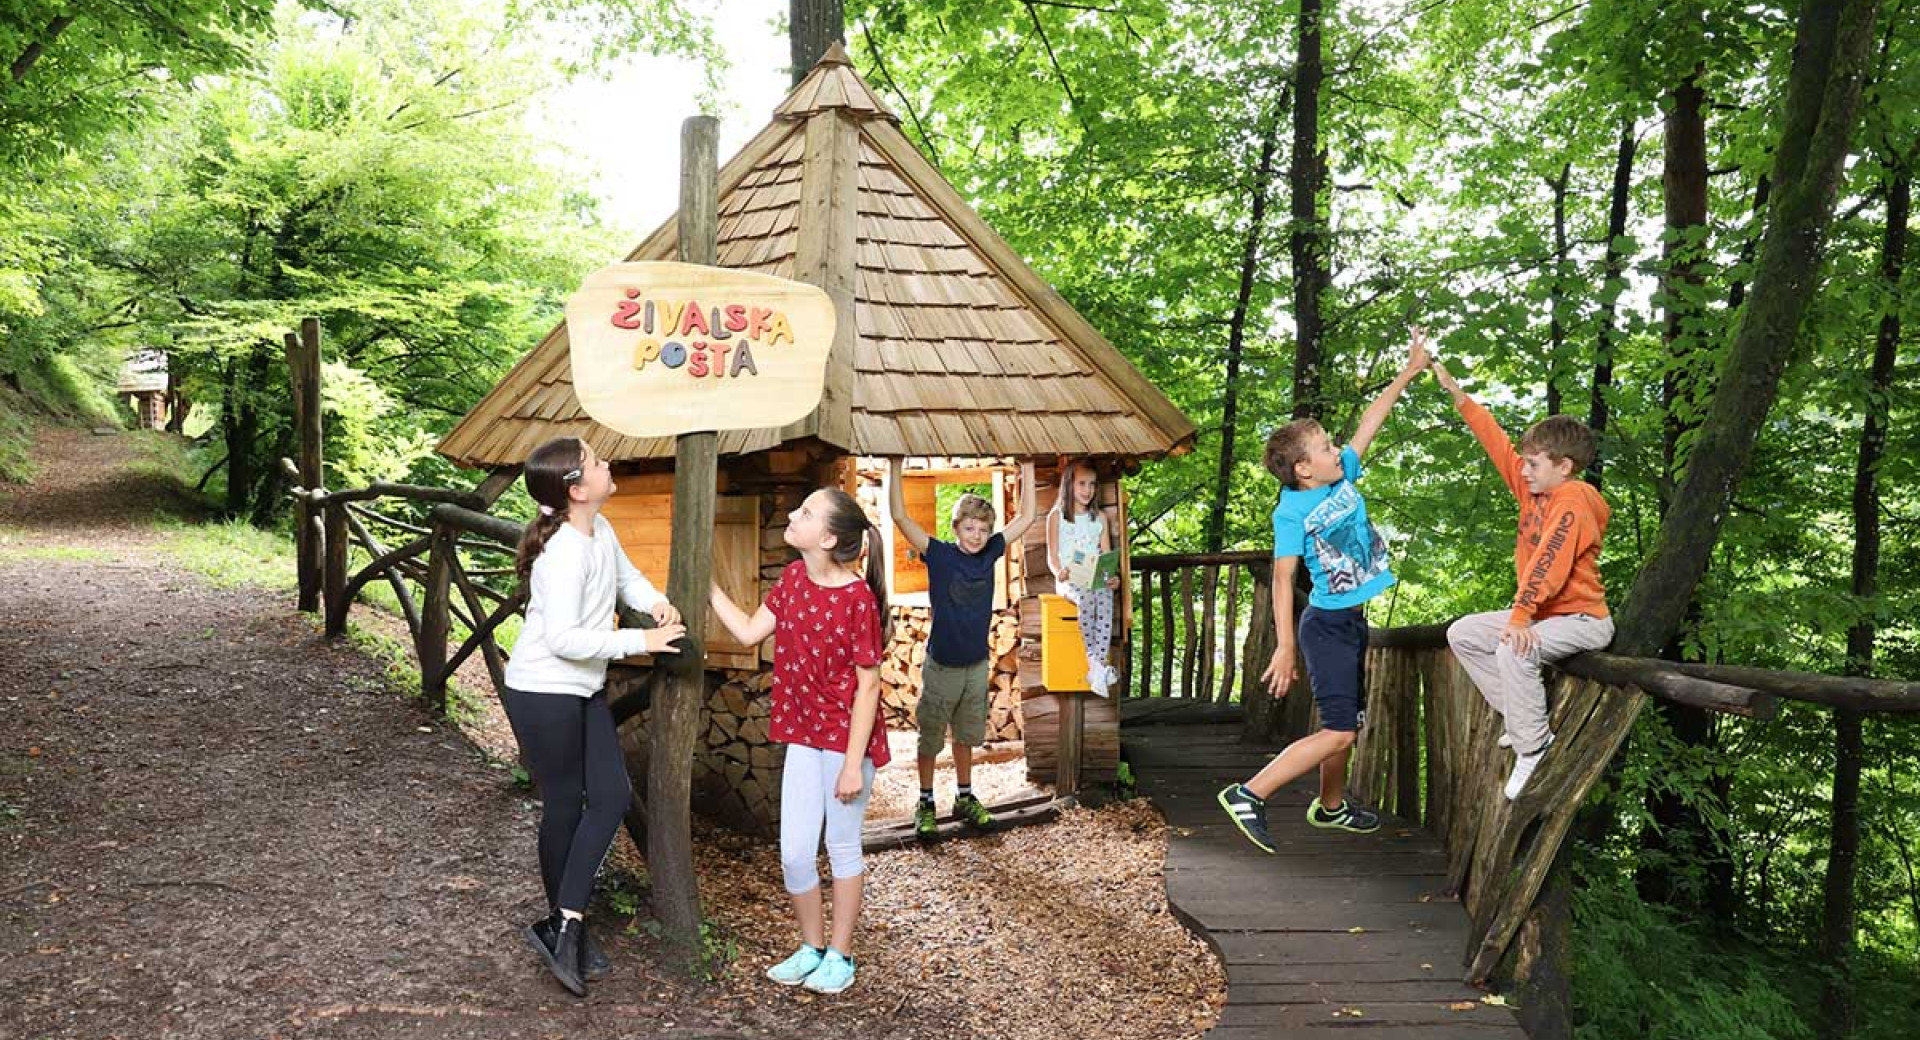 Skupina otrok v Polhovem doživljajskem parku v Polhovem Gradcu v gozdu ob hiški, pred katero je napis Živalska pošta